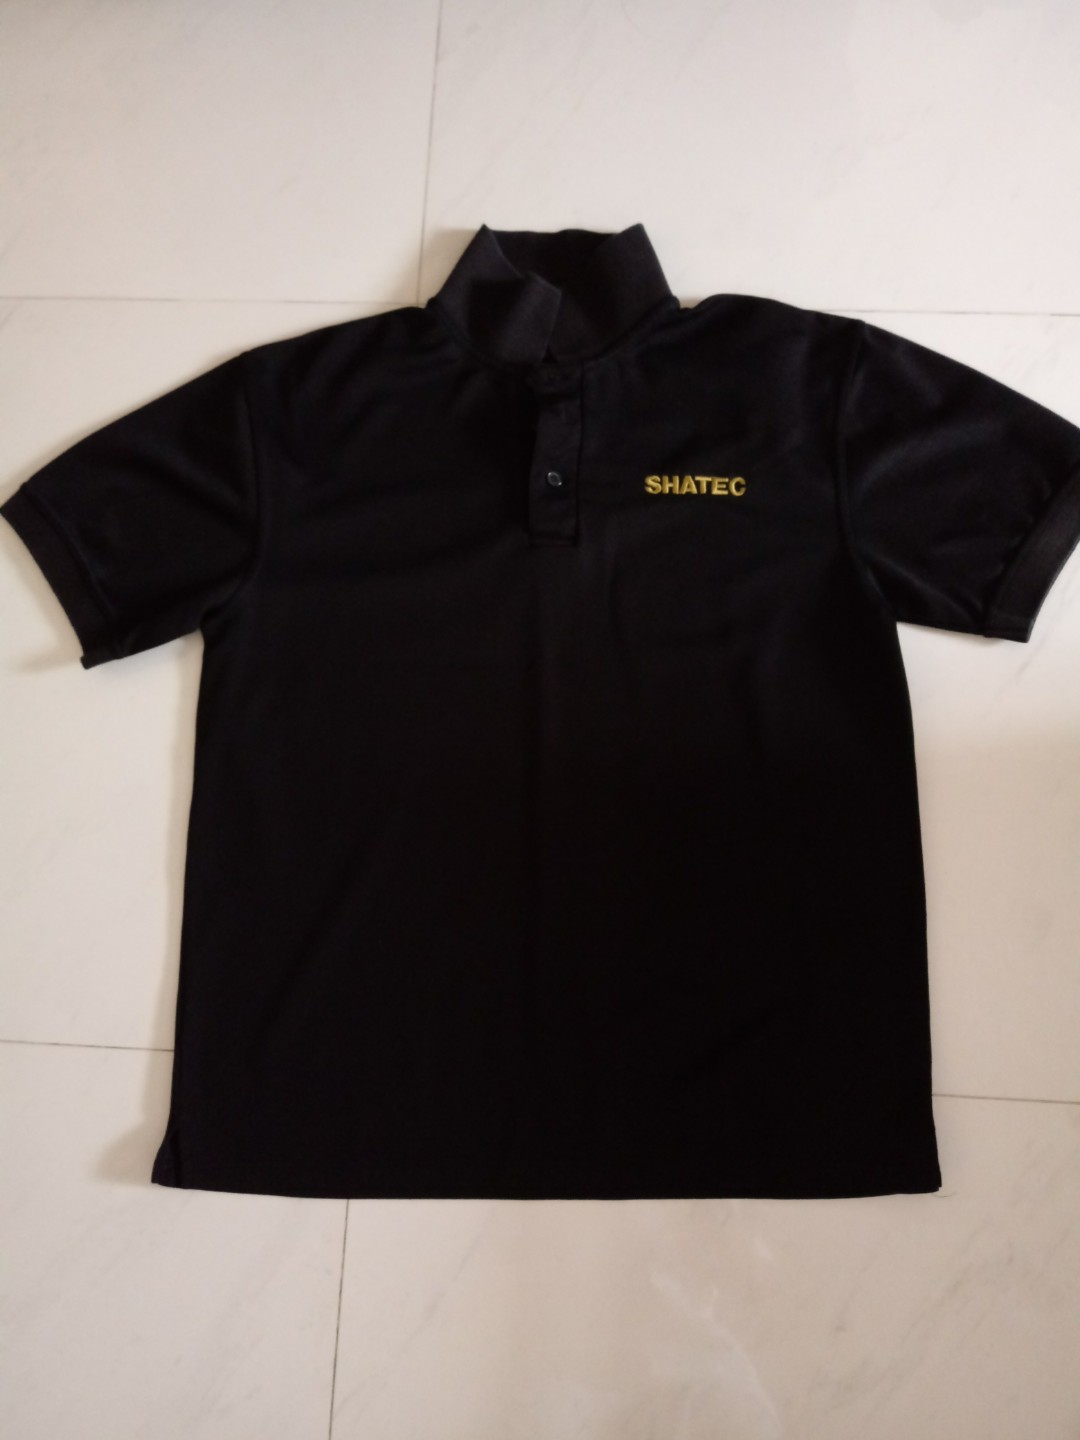 SHATEC School Uniform - T-shirt XL, Men's Fashion, Tops & Sets, Tshirts ...